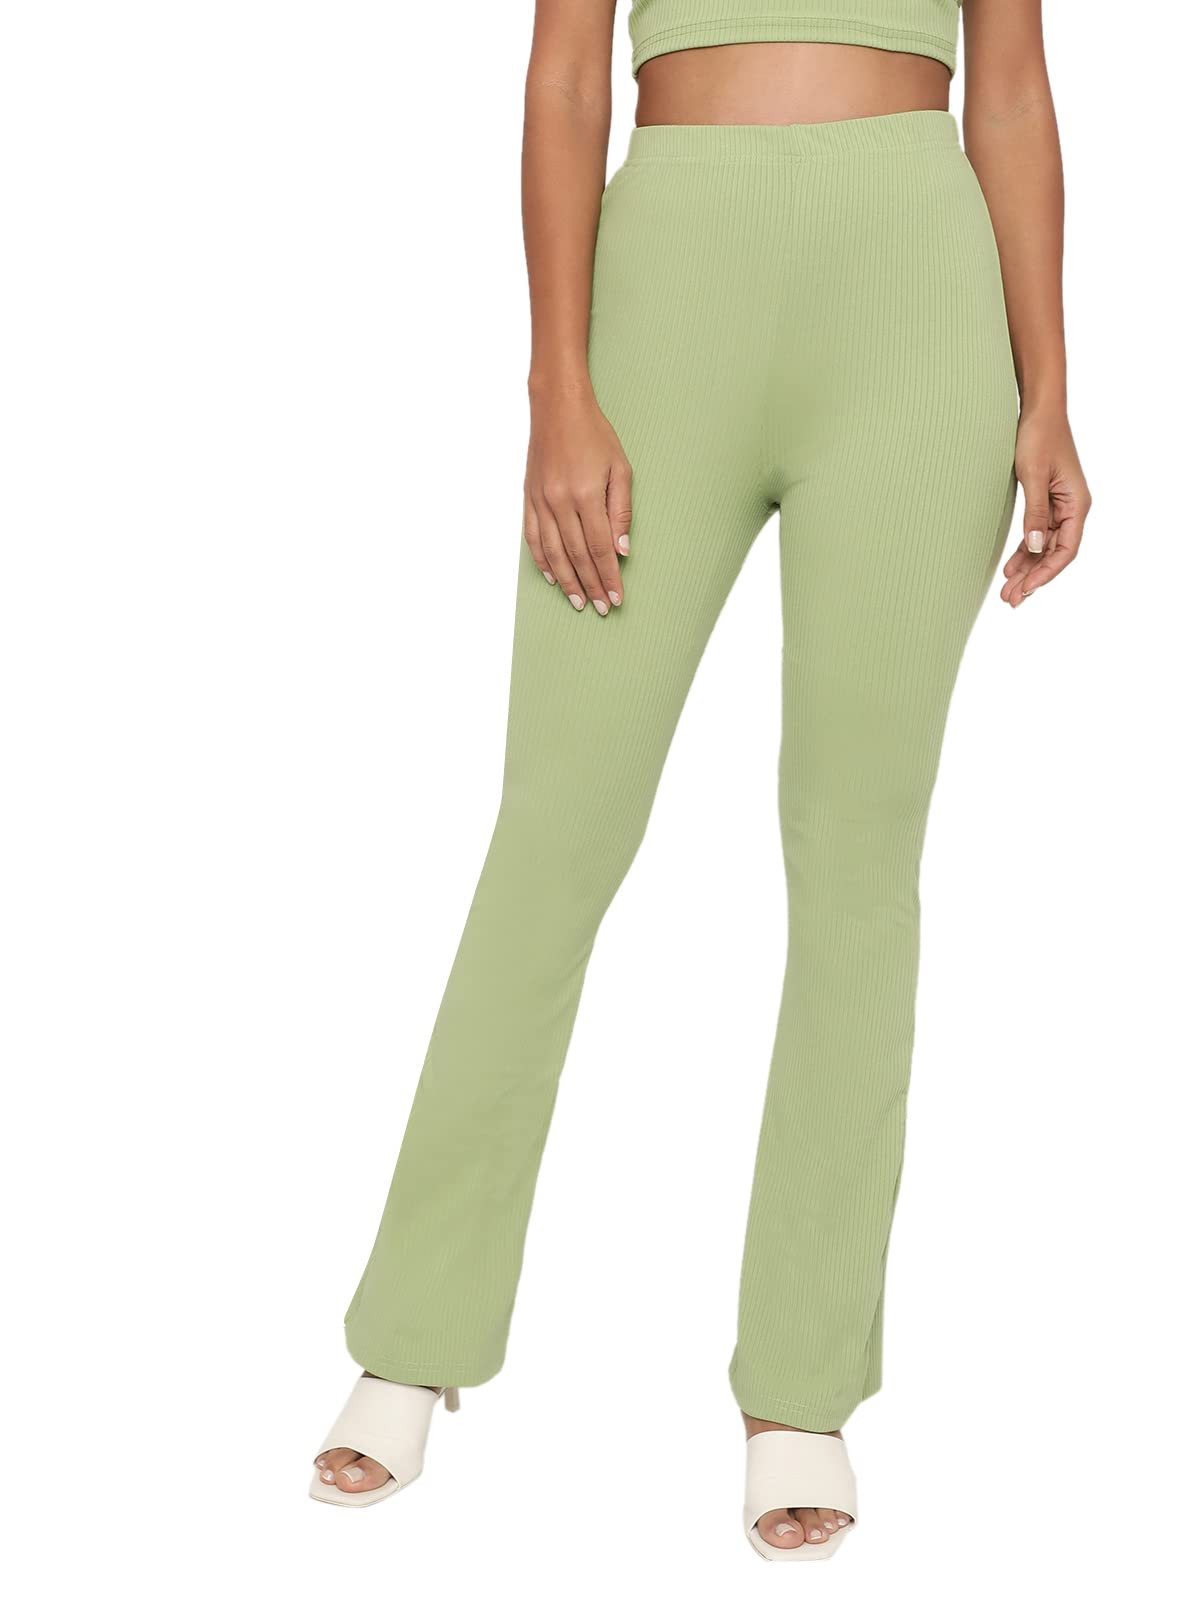 https://www.fastemi.com/uploads/fastemicom/products/shasmi-pista-green-lightweight-stretchable-yoga-pants-boot-cut-regular-fit-trouser-pant-57-pant-pista-green-xlsize-xl-199450764345799_l.jpg